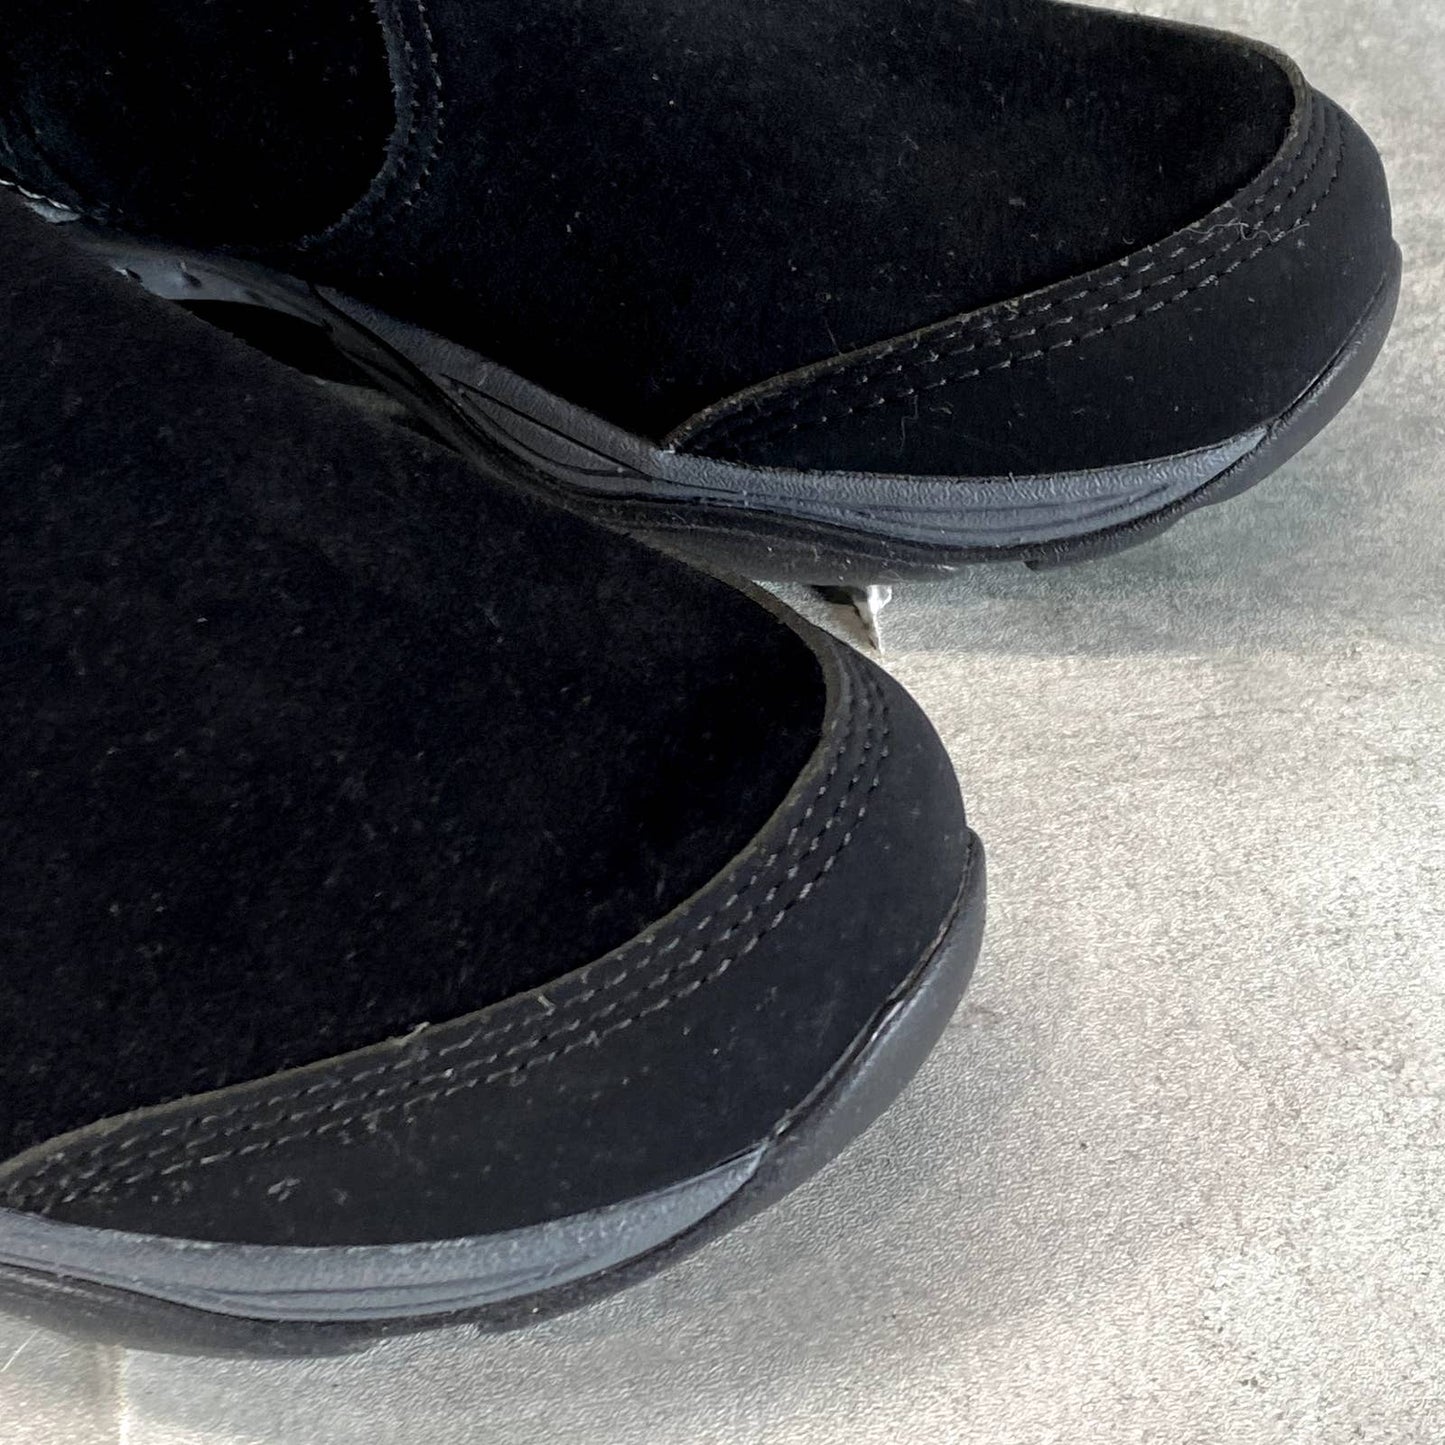 EASY SPIRIT Women's Black Faux-Fur Seelk Round-Toe Side-Zip Ankle Boots SZ 5.5